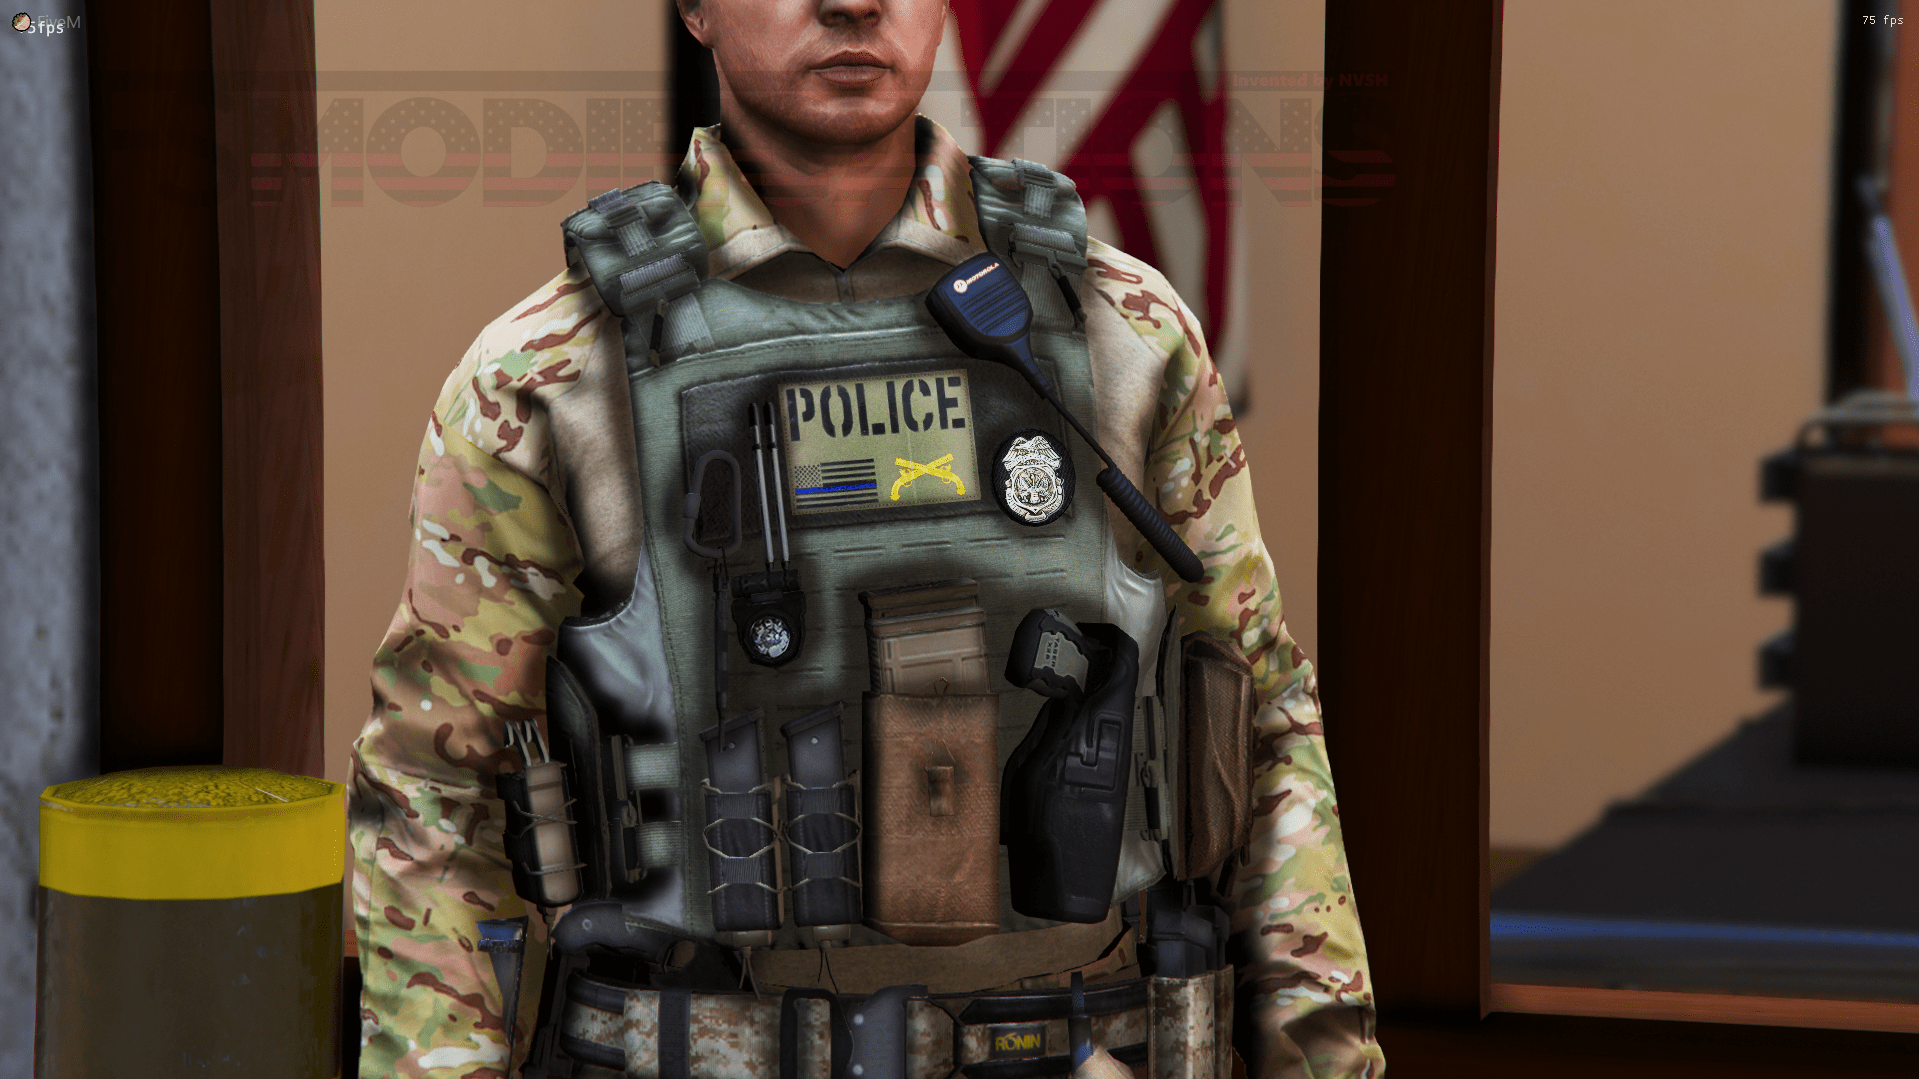 [eup] [fivem] Military Police Vest Skin Gta5